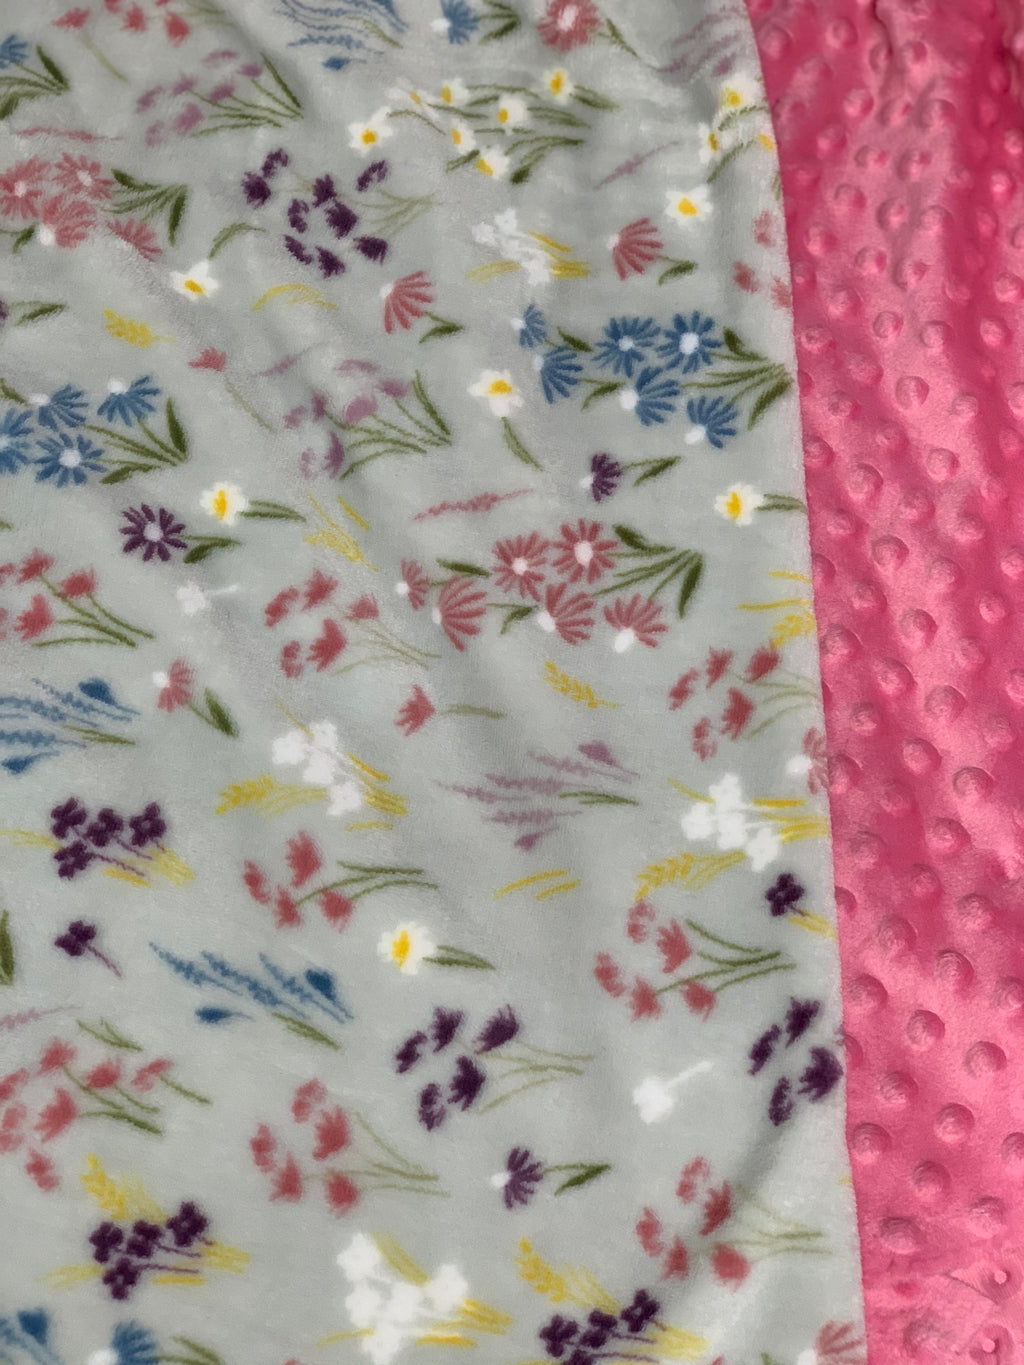 Wild Flowers Minky Blanket backed w/Pink Minky in 2 Size Options